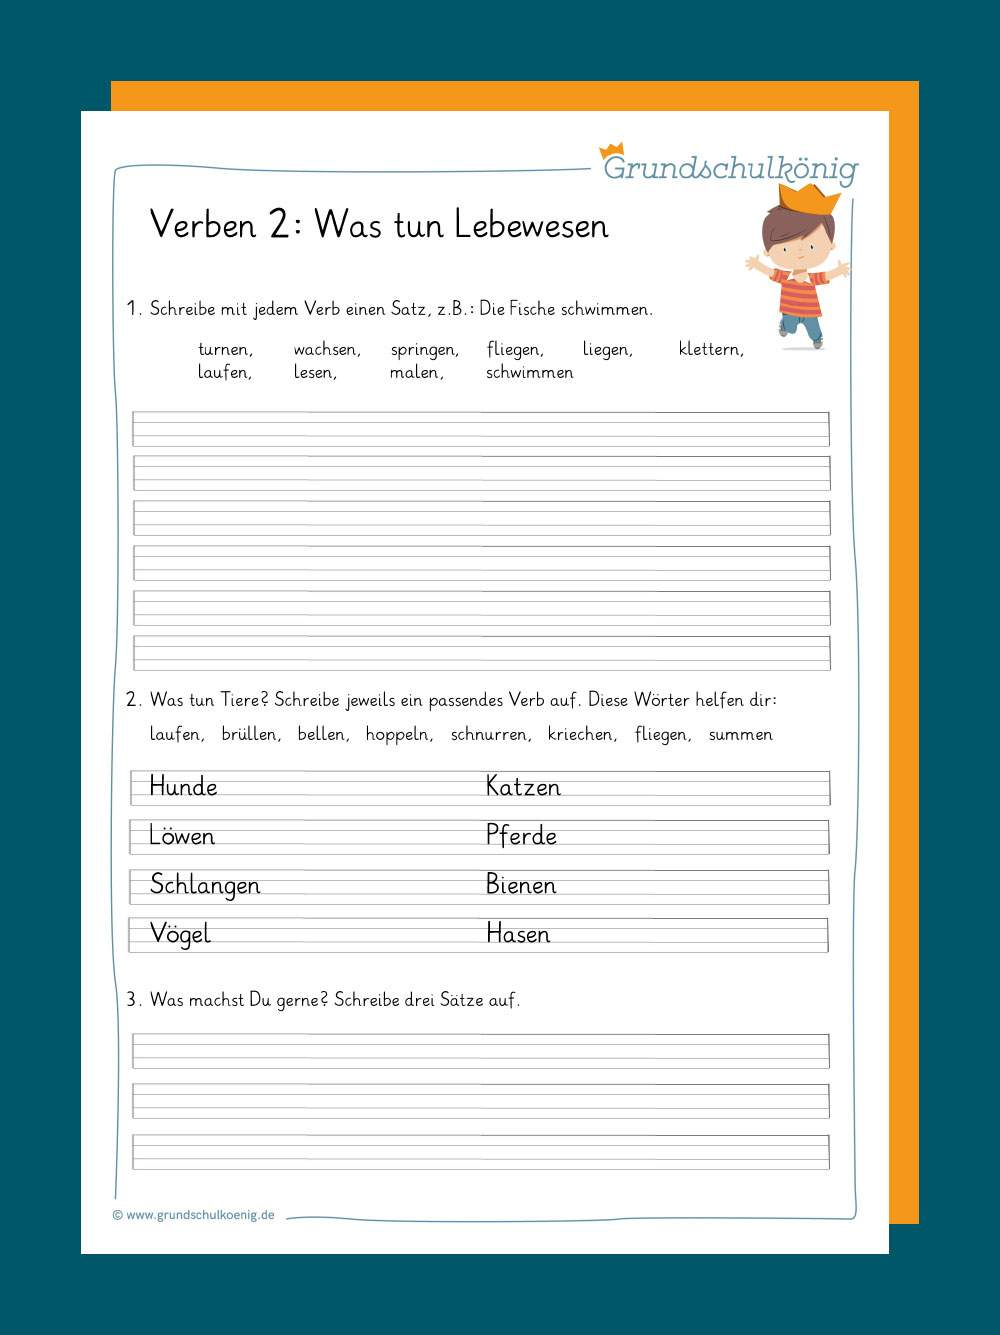 Verben Und Zeitformen verwandt mit Übungsaufgaben 3 Klasse Deutsch